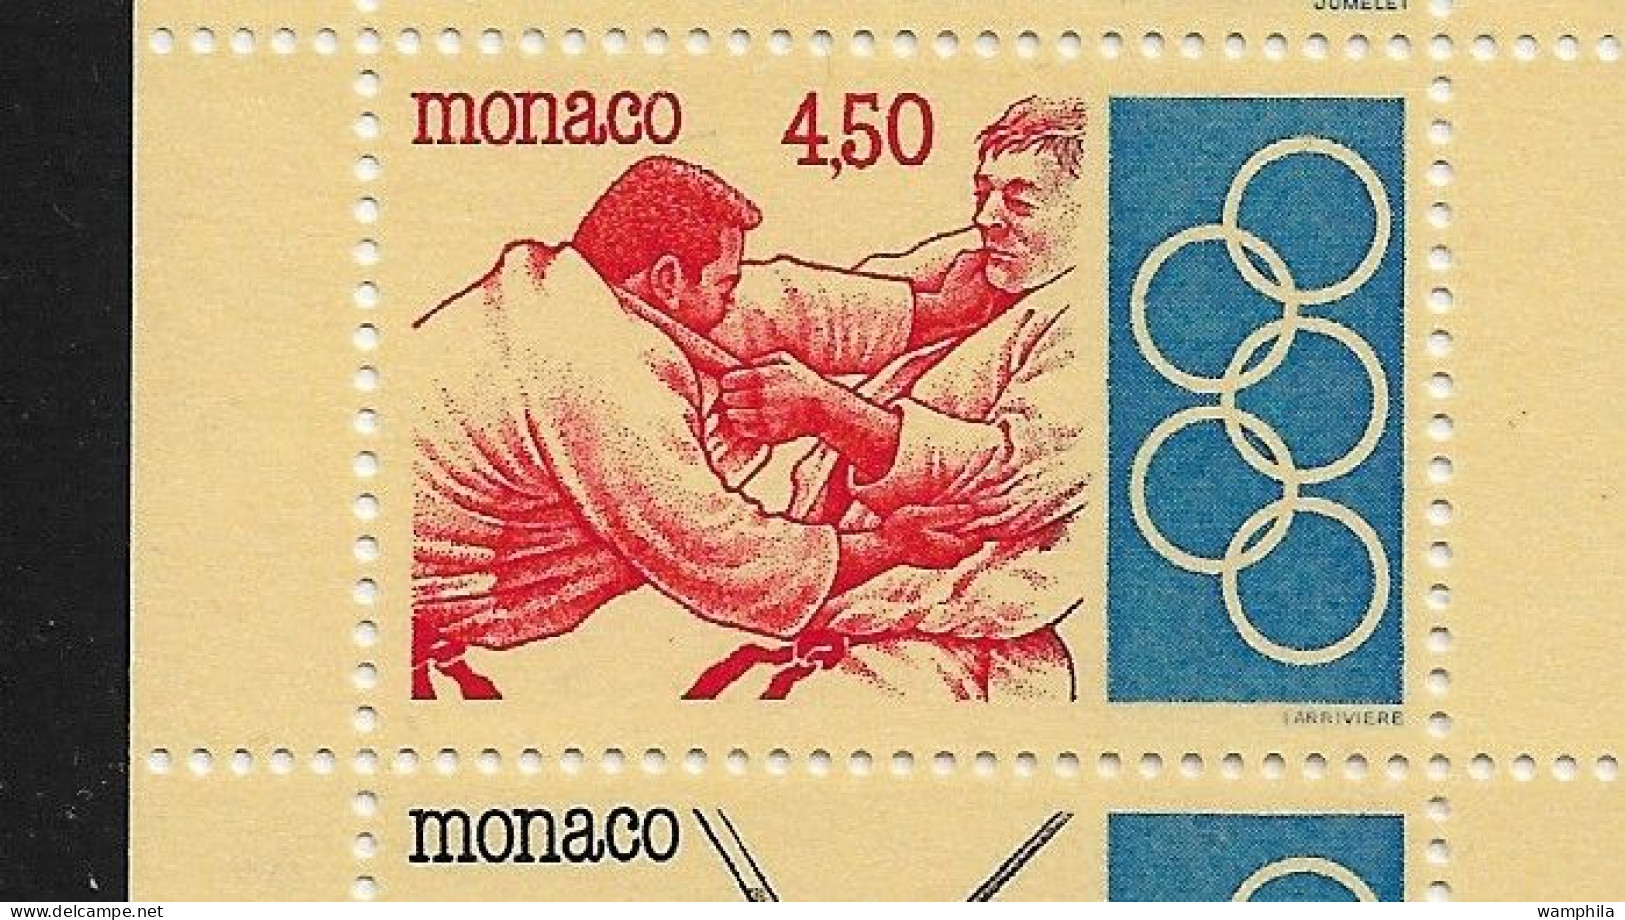 Monaco 1993. Carnet N°11, J.O .Anneaux, Judo, Escrime, Haies, Tir à L'arc, Haltérophilie. - Tir à L'Arc